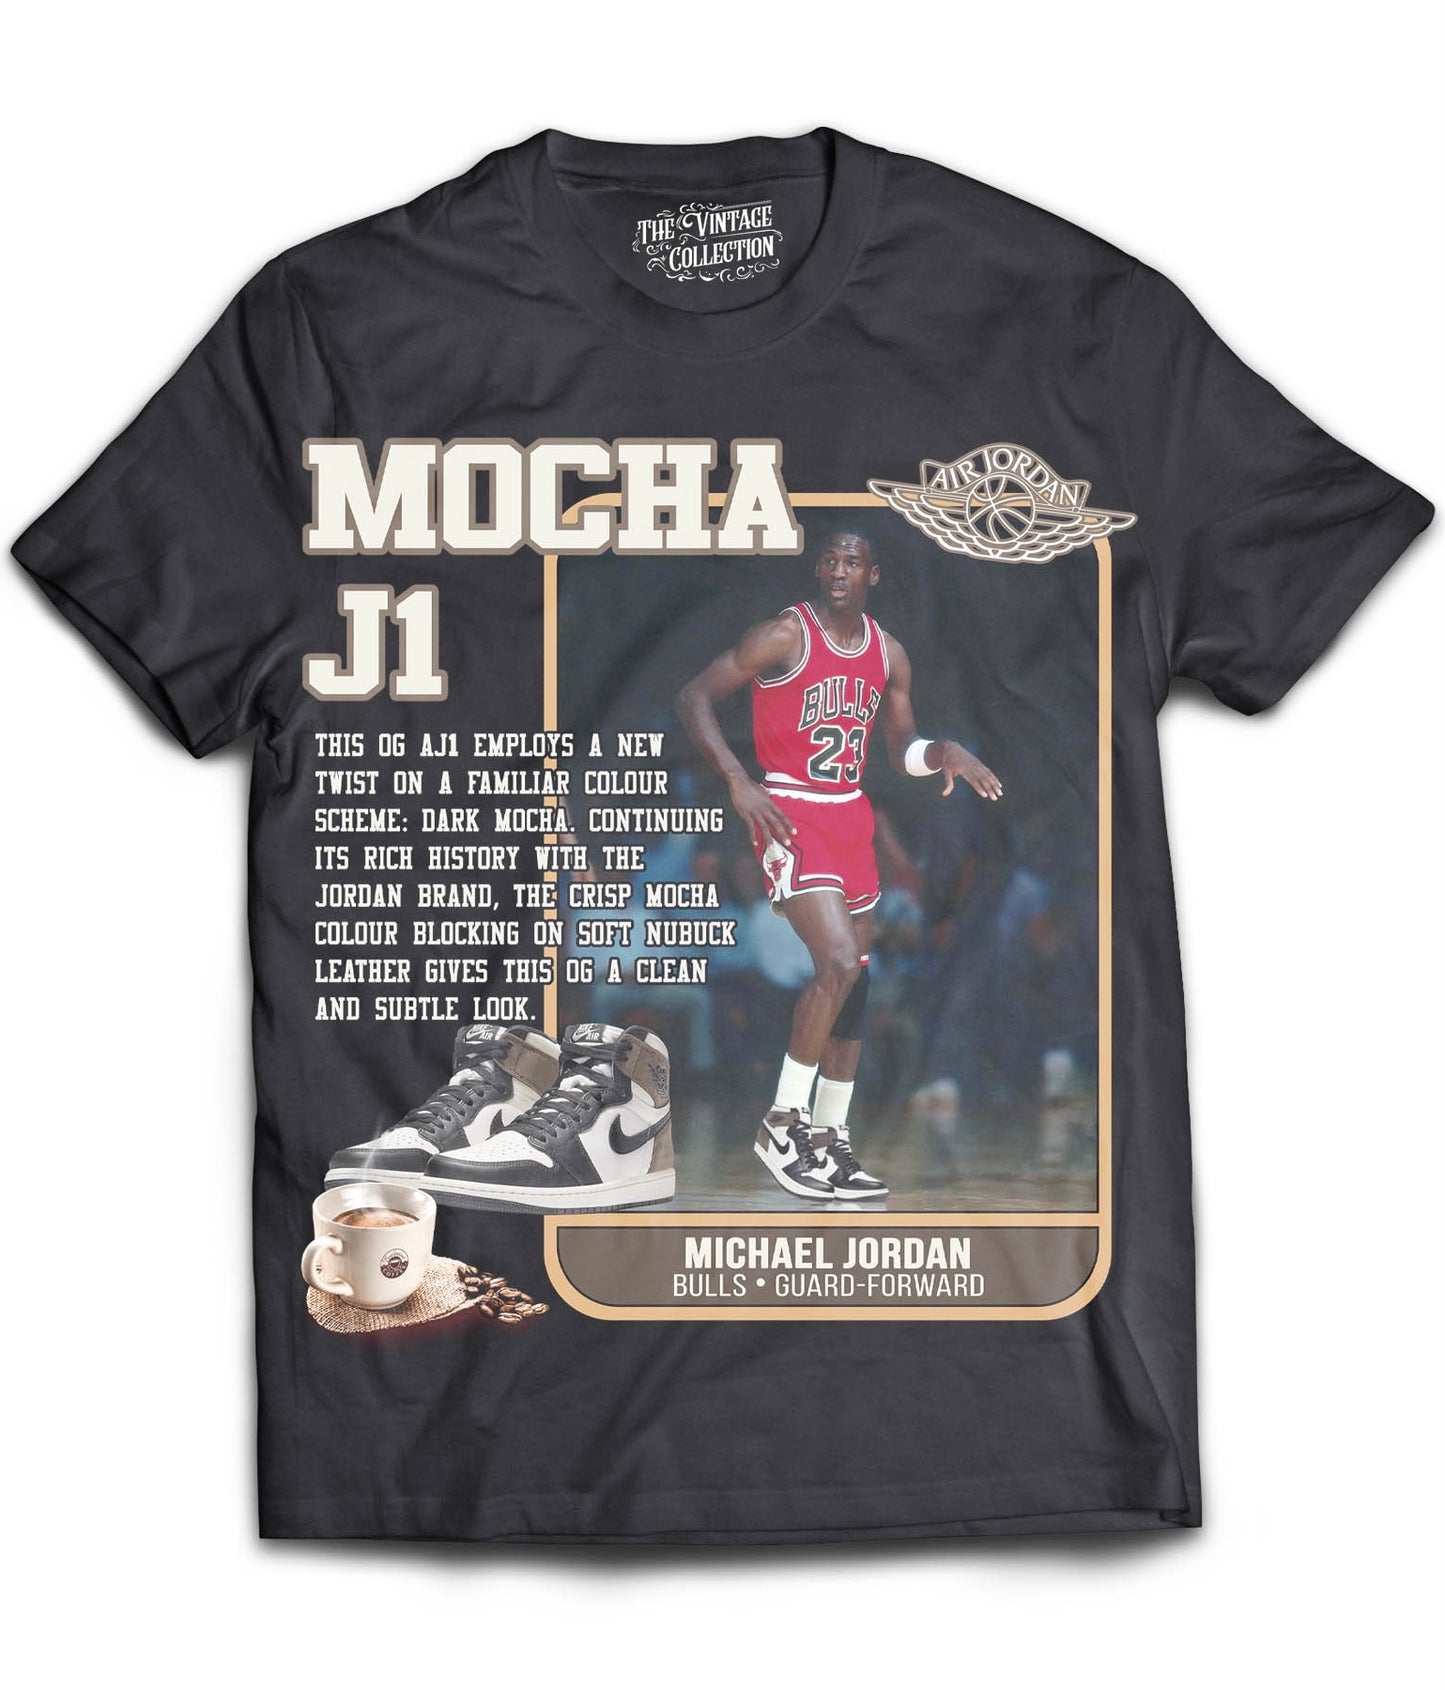 Mocha J1 Card Shirt (Black)